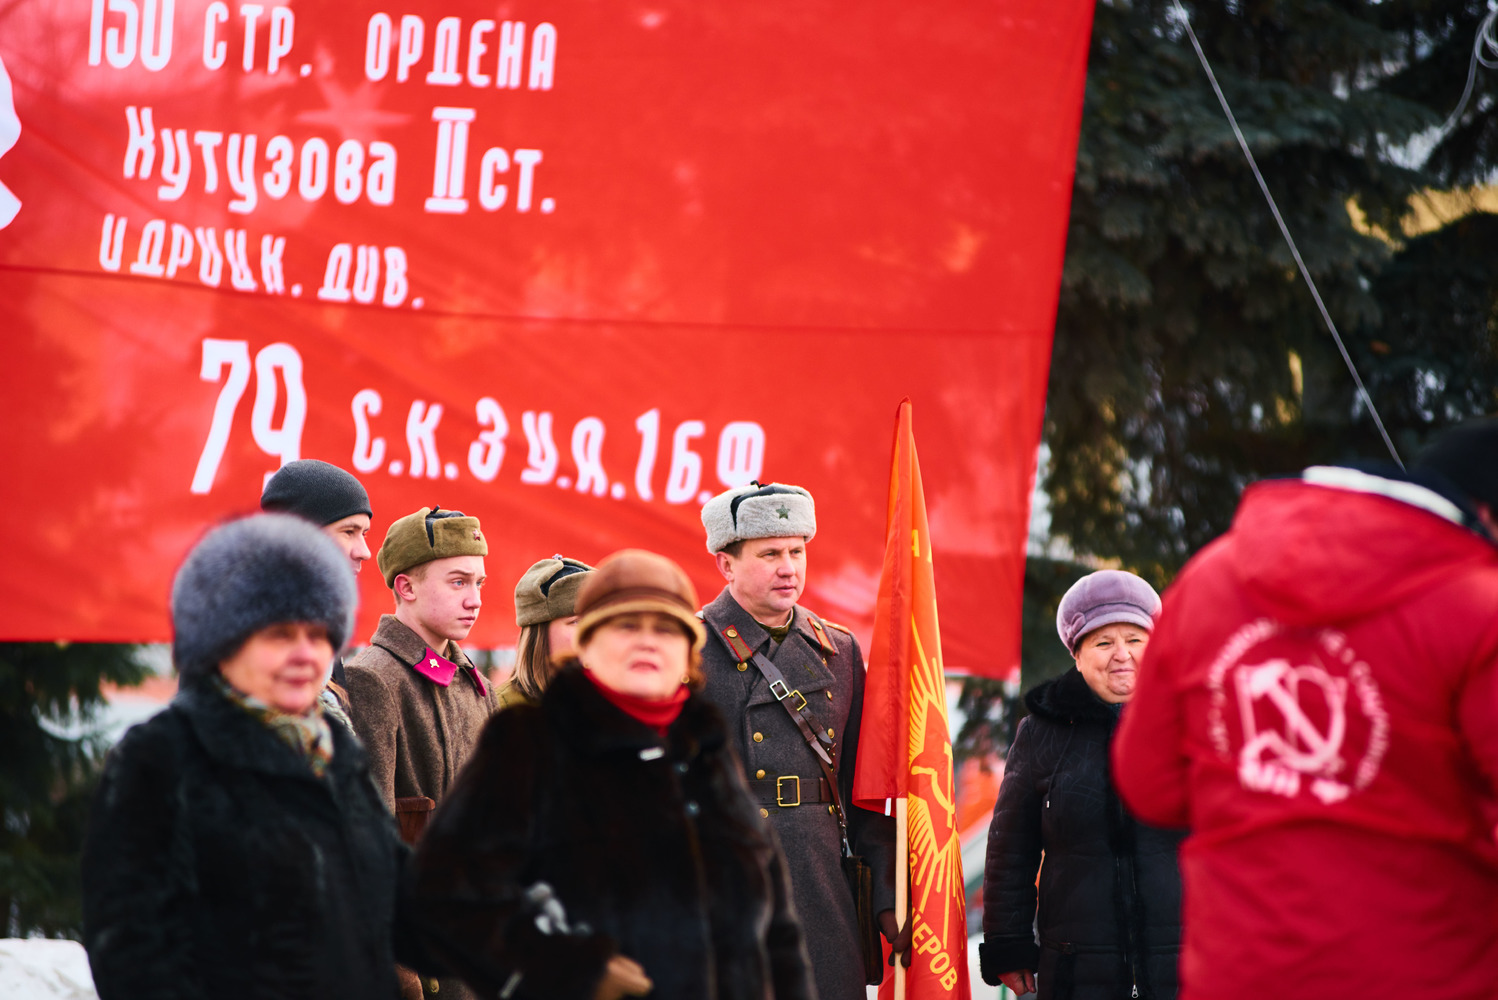 Нижегородские коммунисты: “Сталинградской победе – в Нижнем Новгороде быть!”